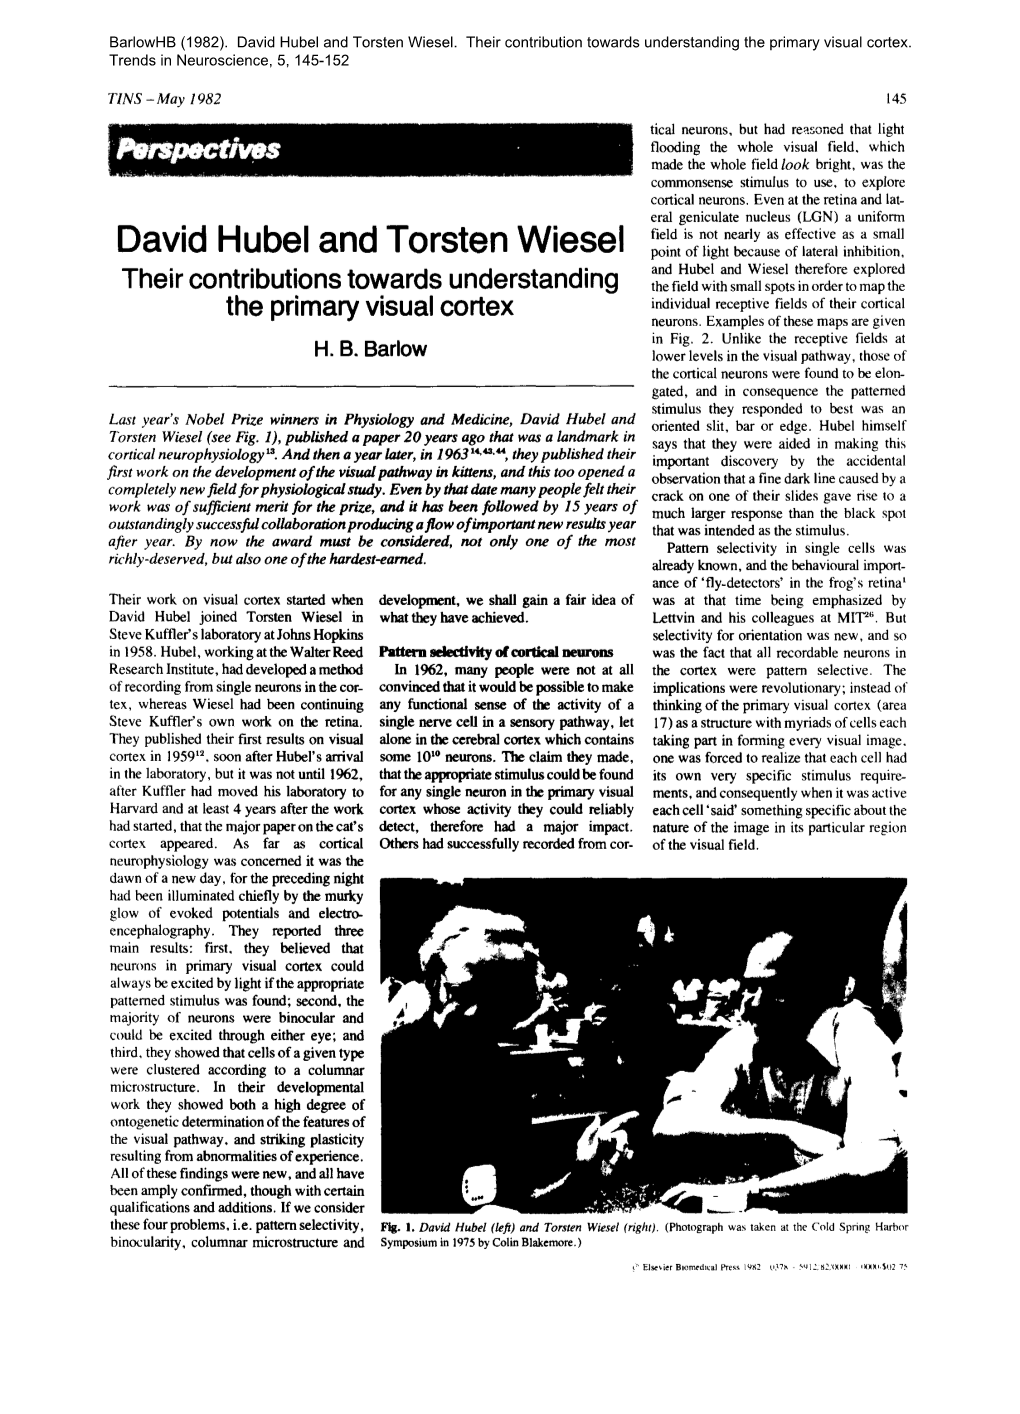 David Hubel and Torsten Wiesel